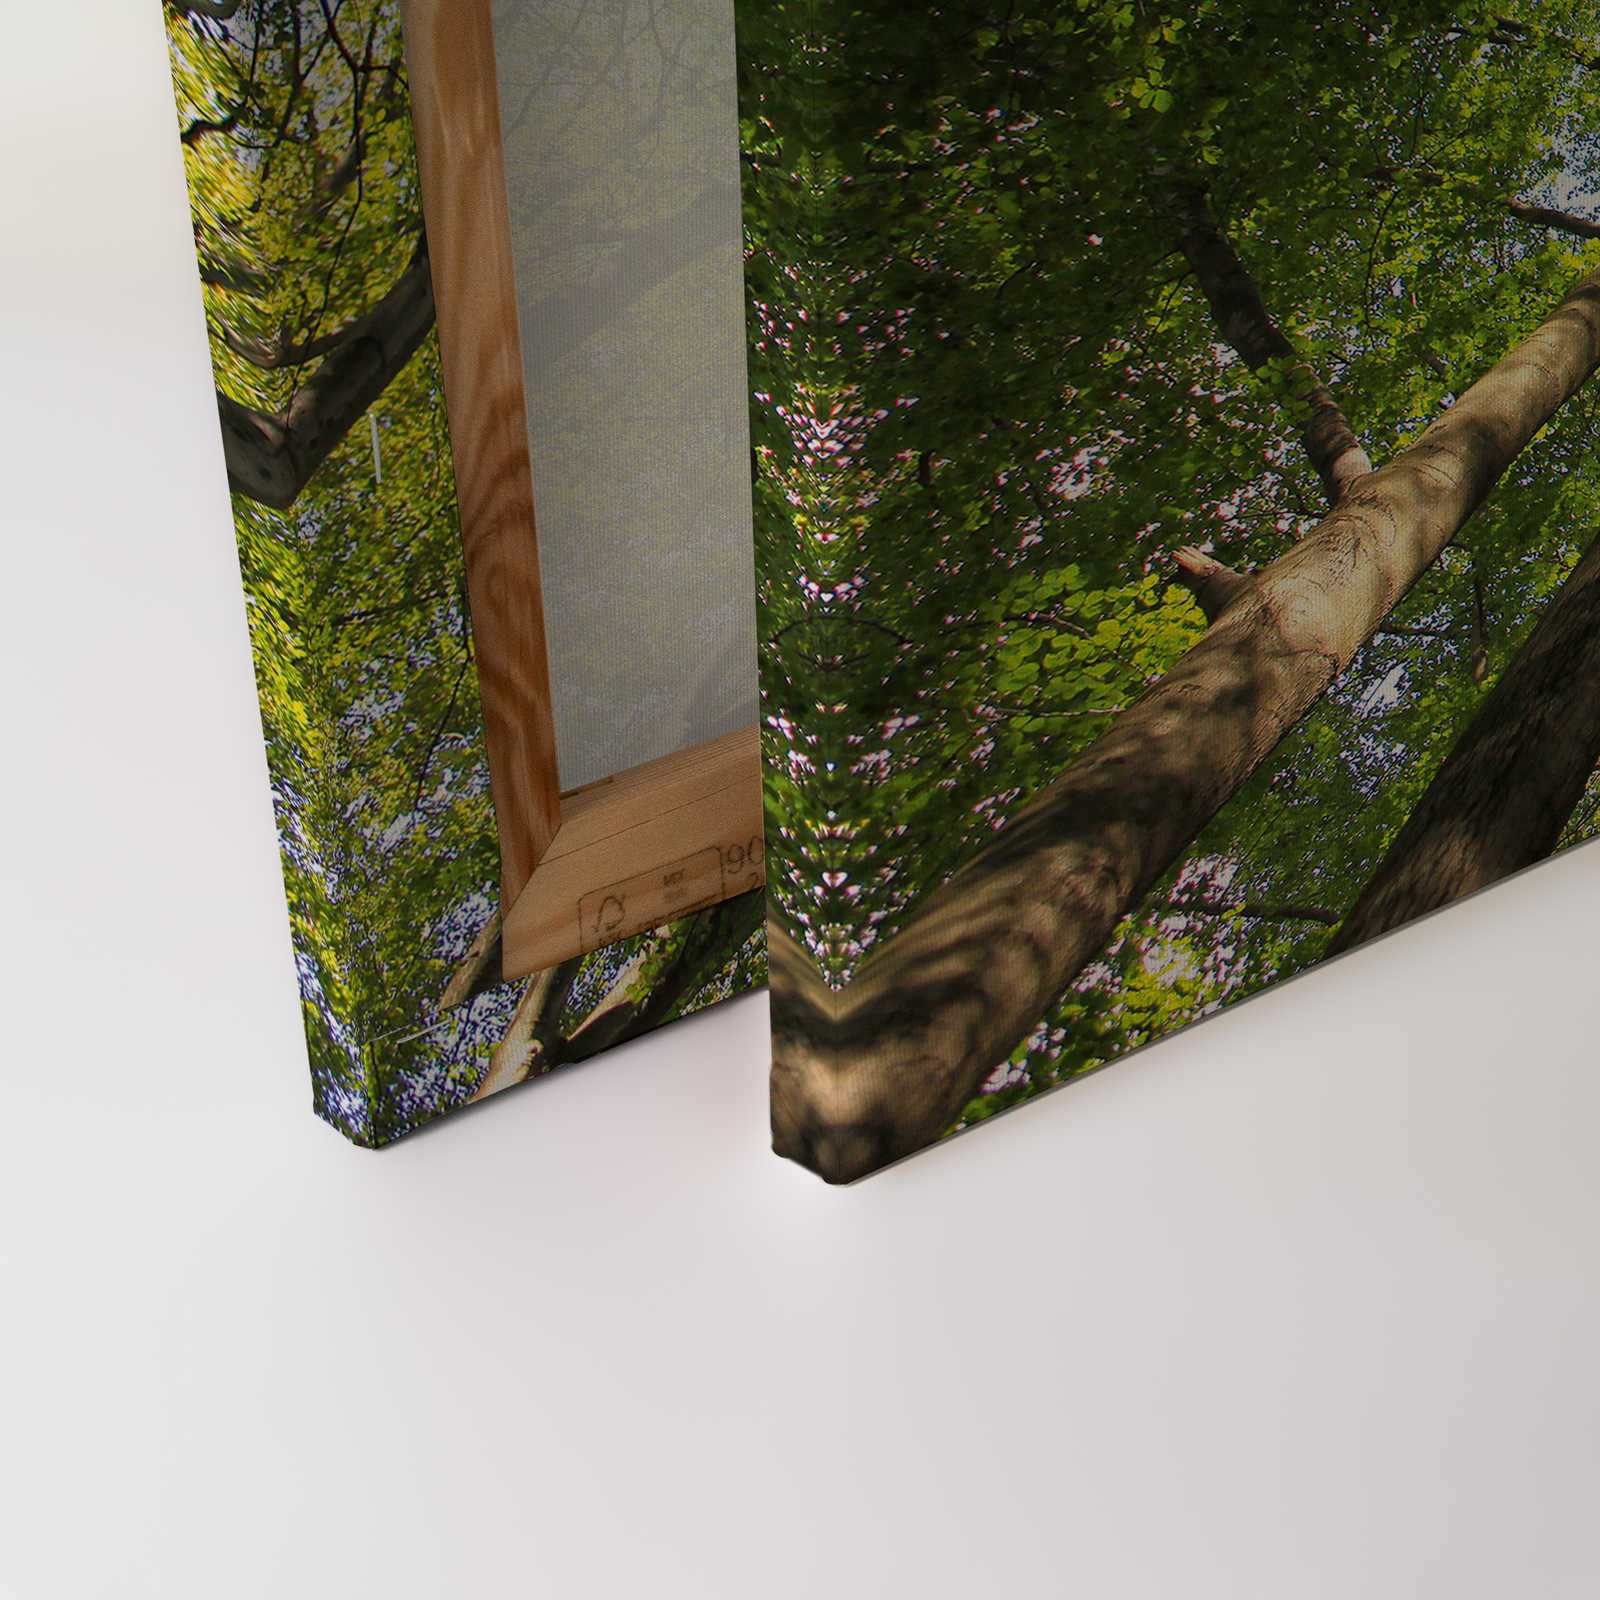             Cuadro lienzo follaje con copas de árboles de bosque caducifolio - 1,20 m x 0,80 m
        